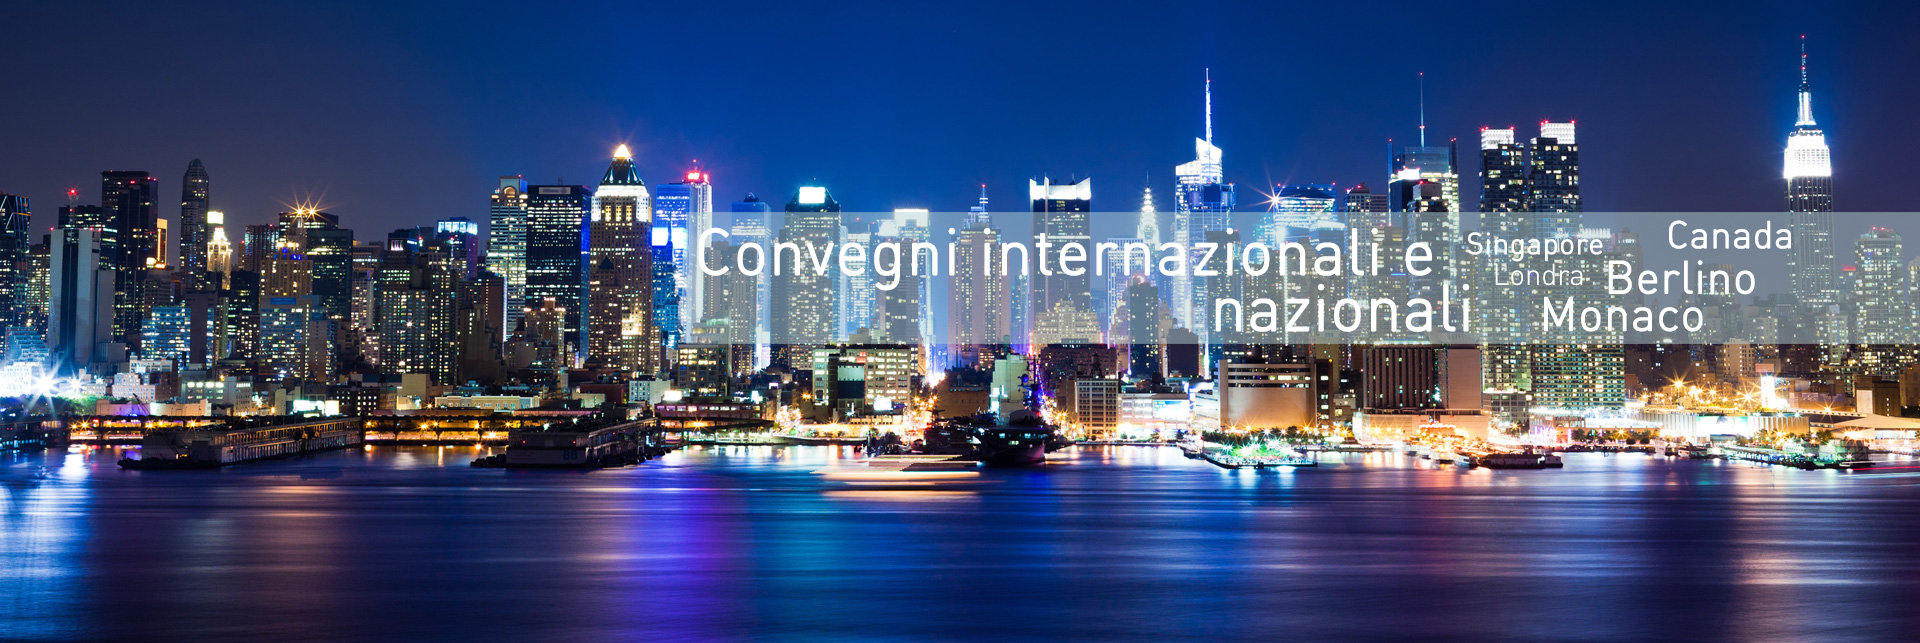 congressi internazionali